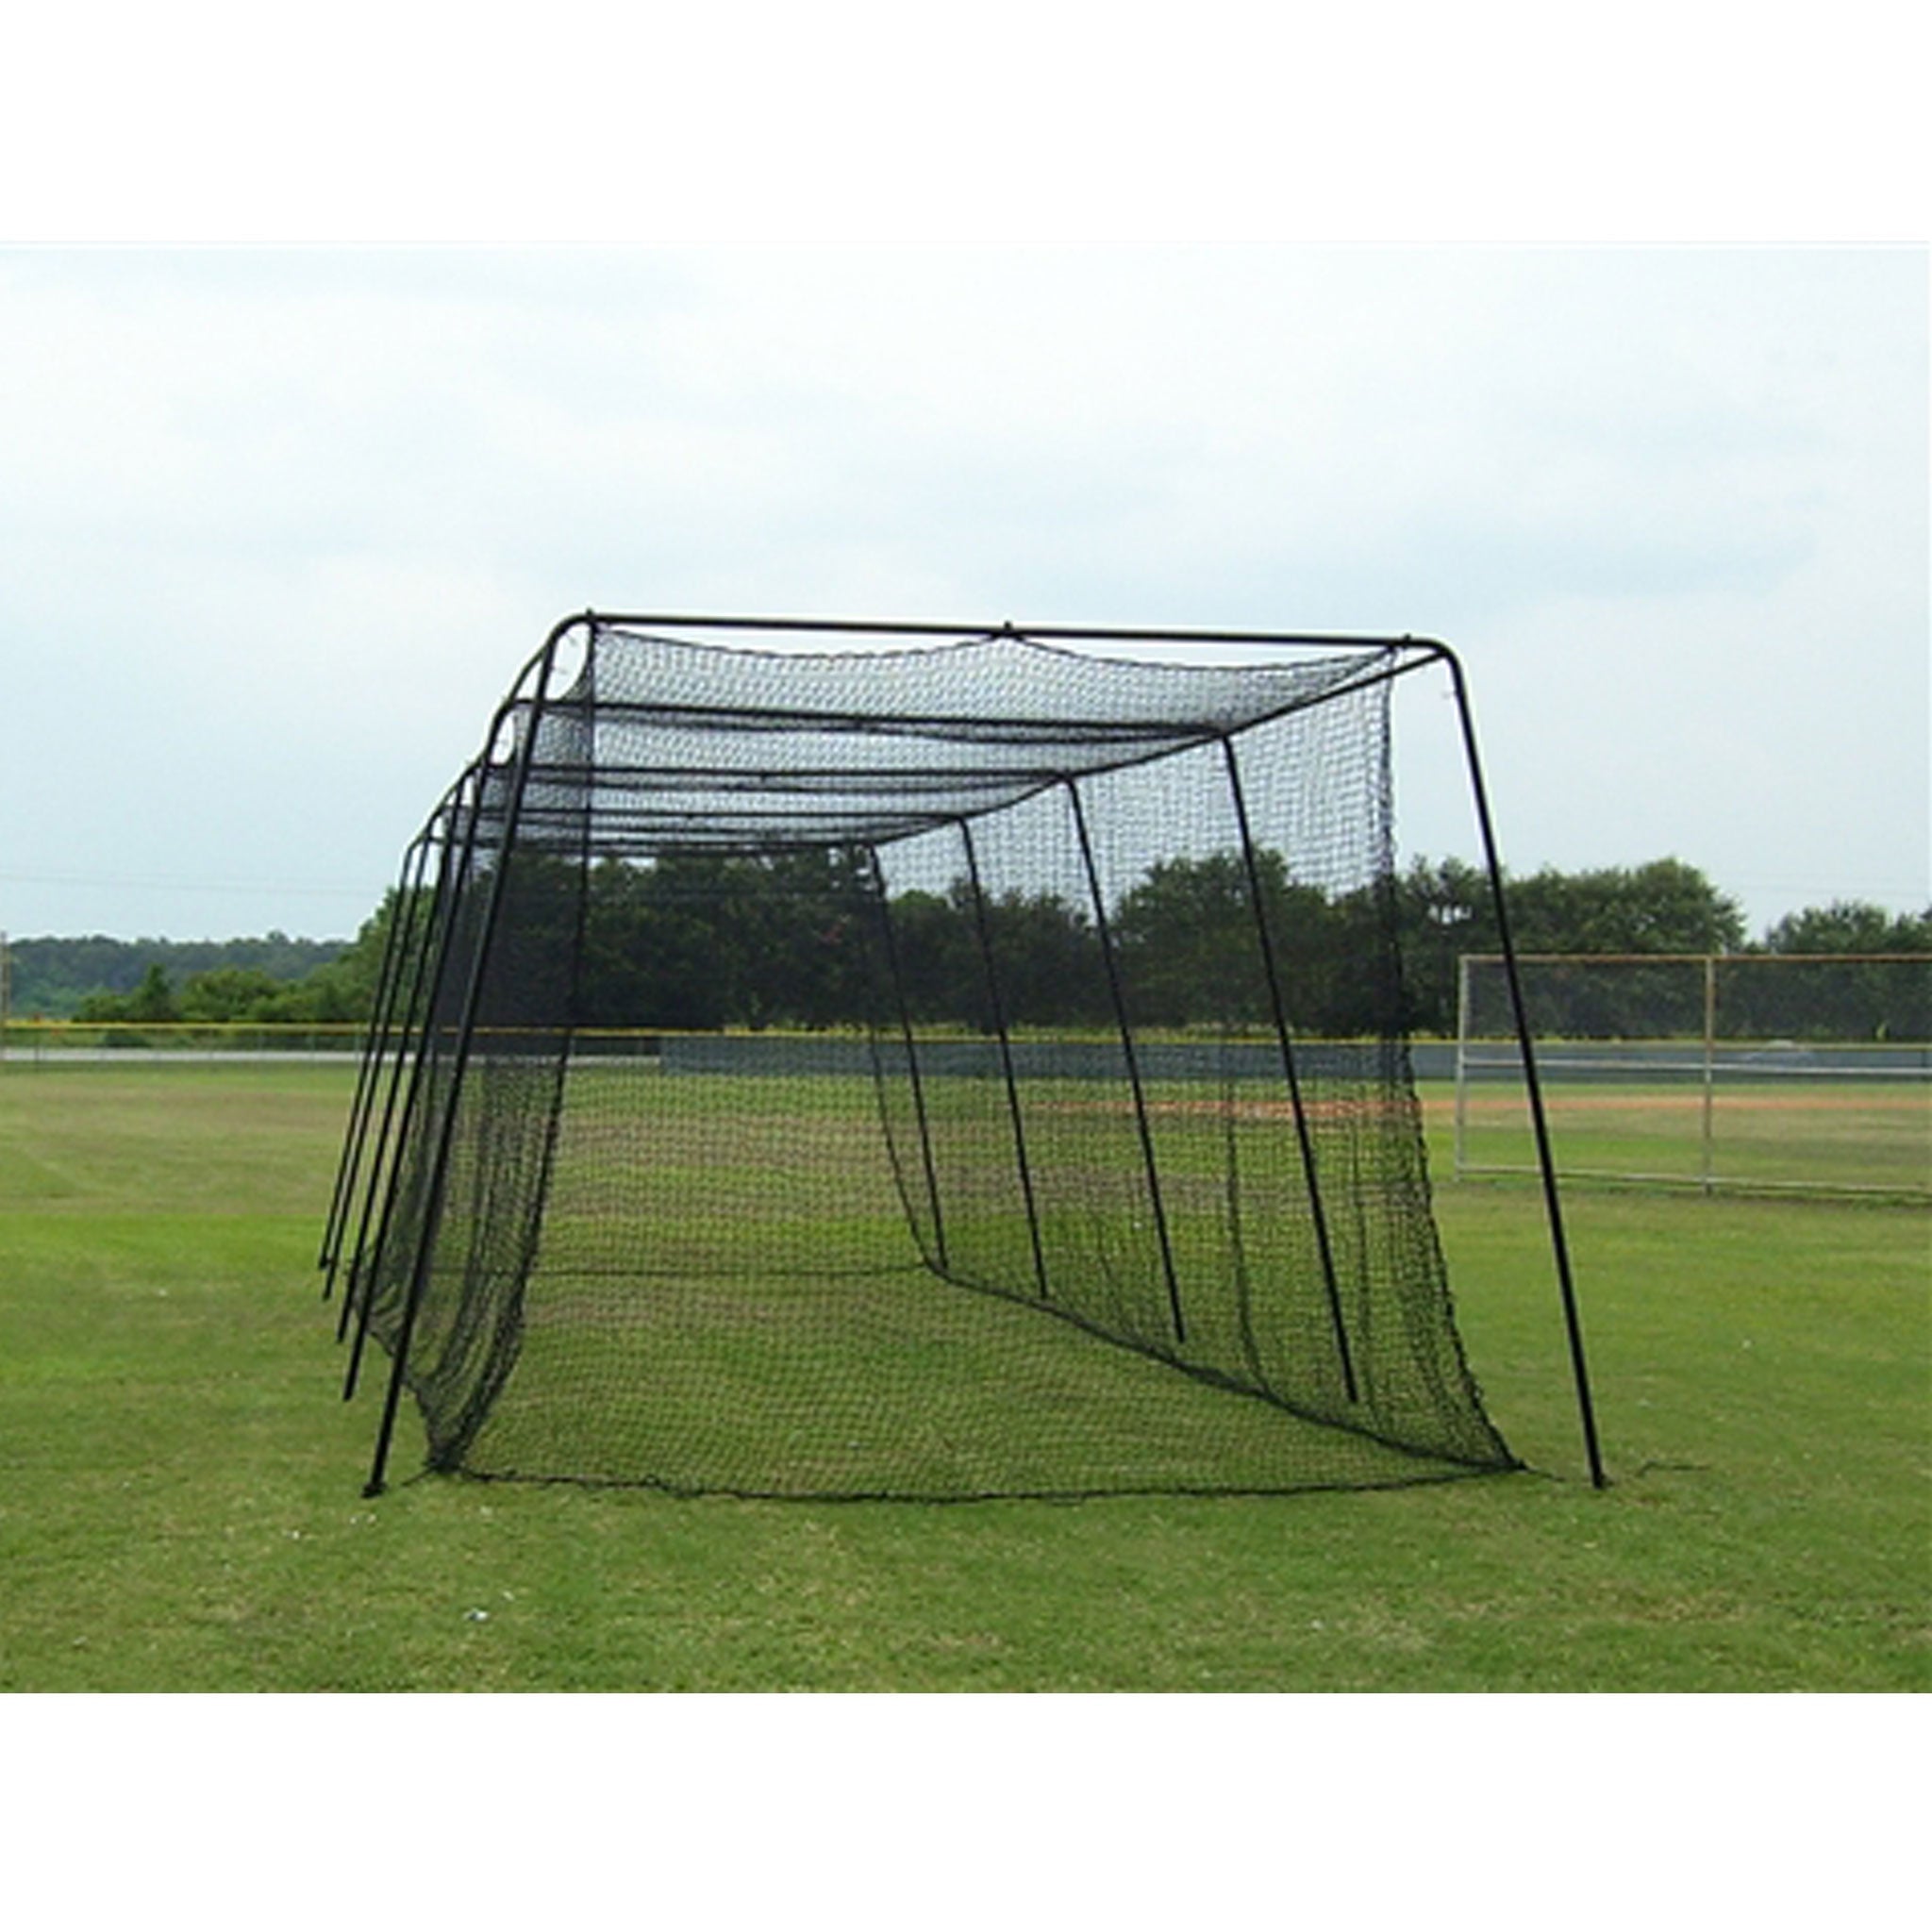 Pro 42 40x12x10 Batting Cage Net Muhl Tech Baseball